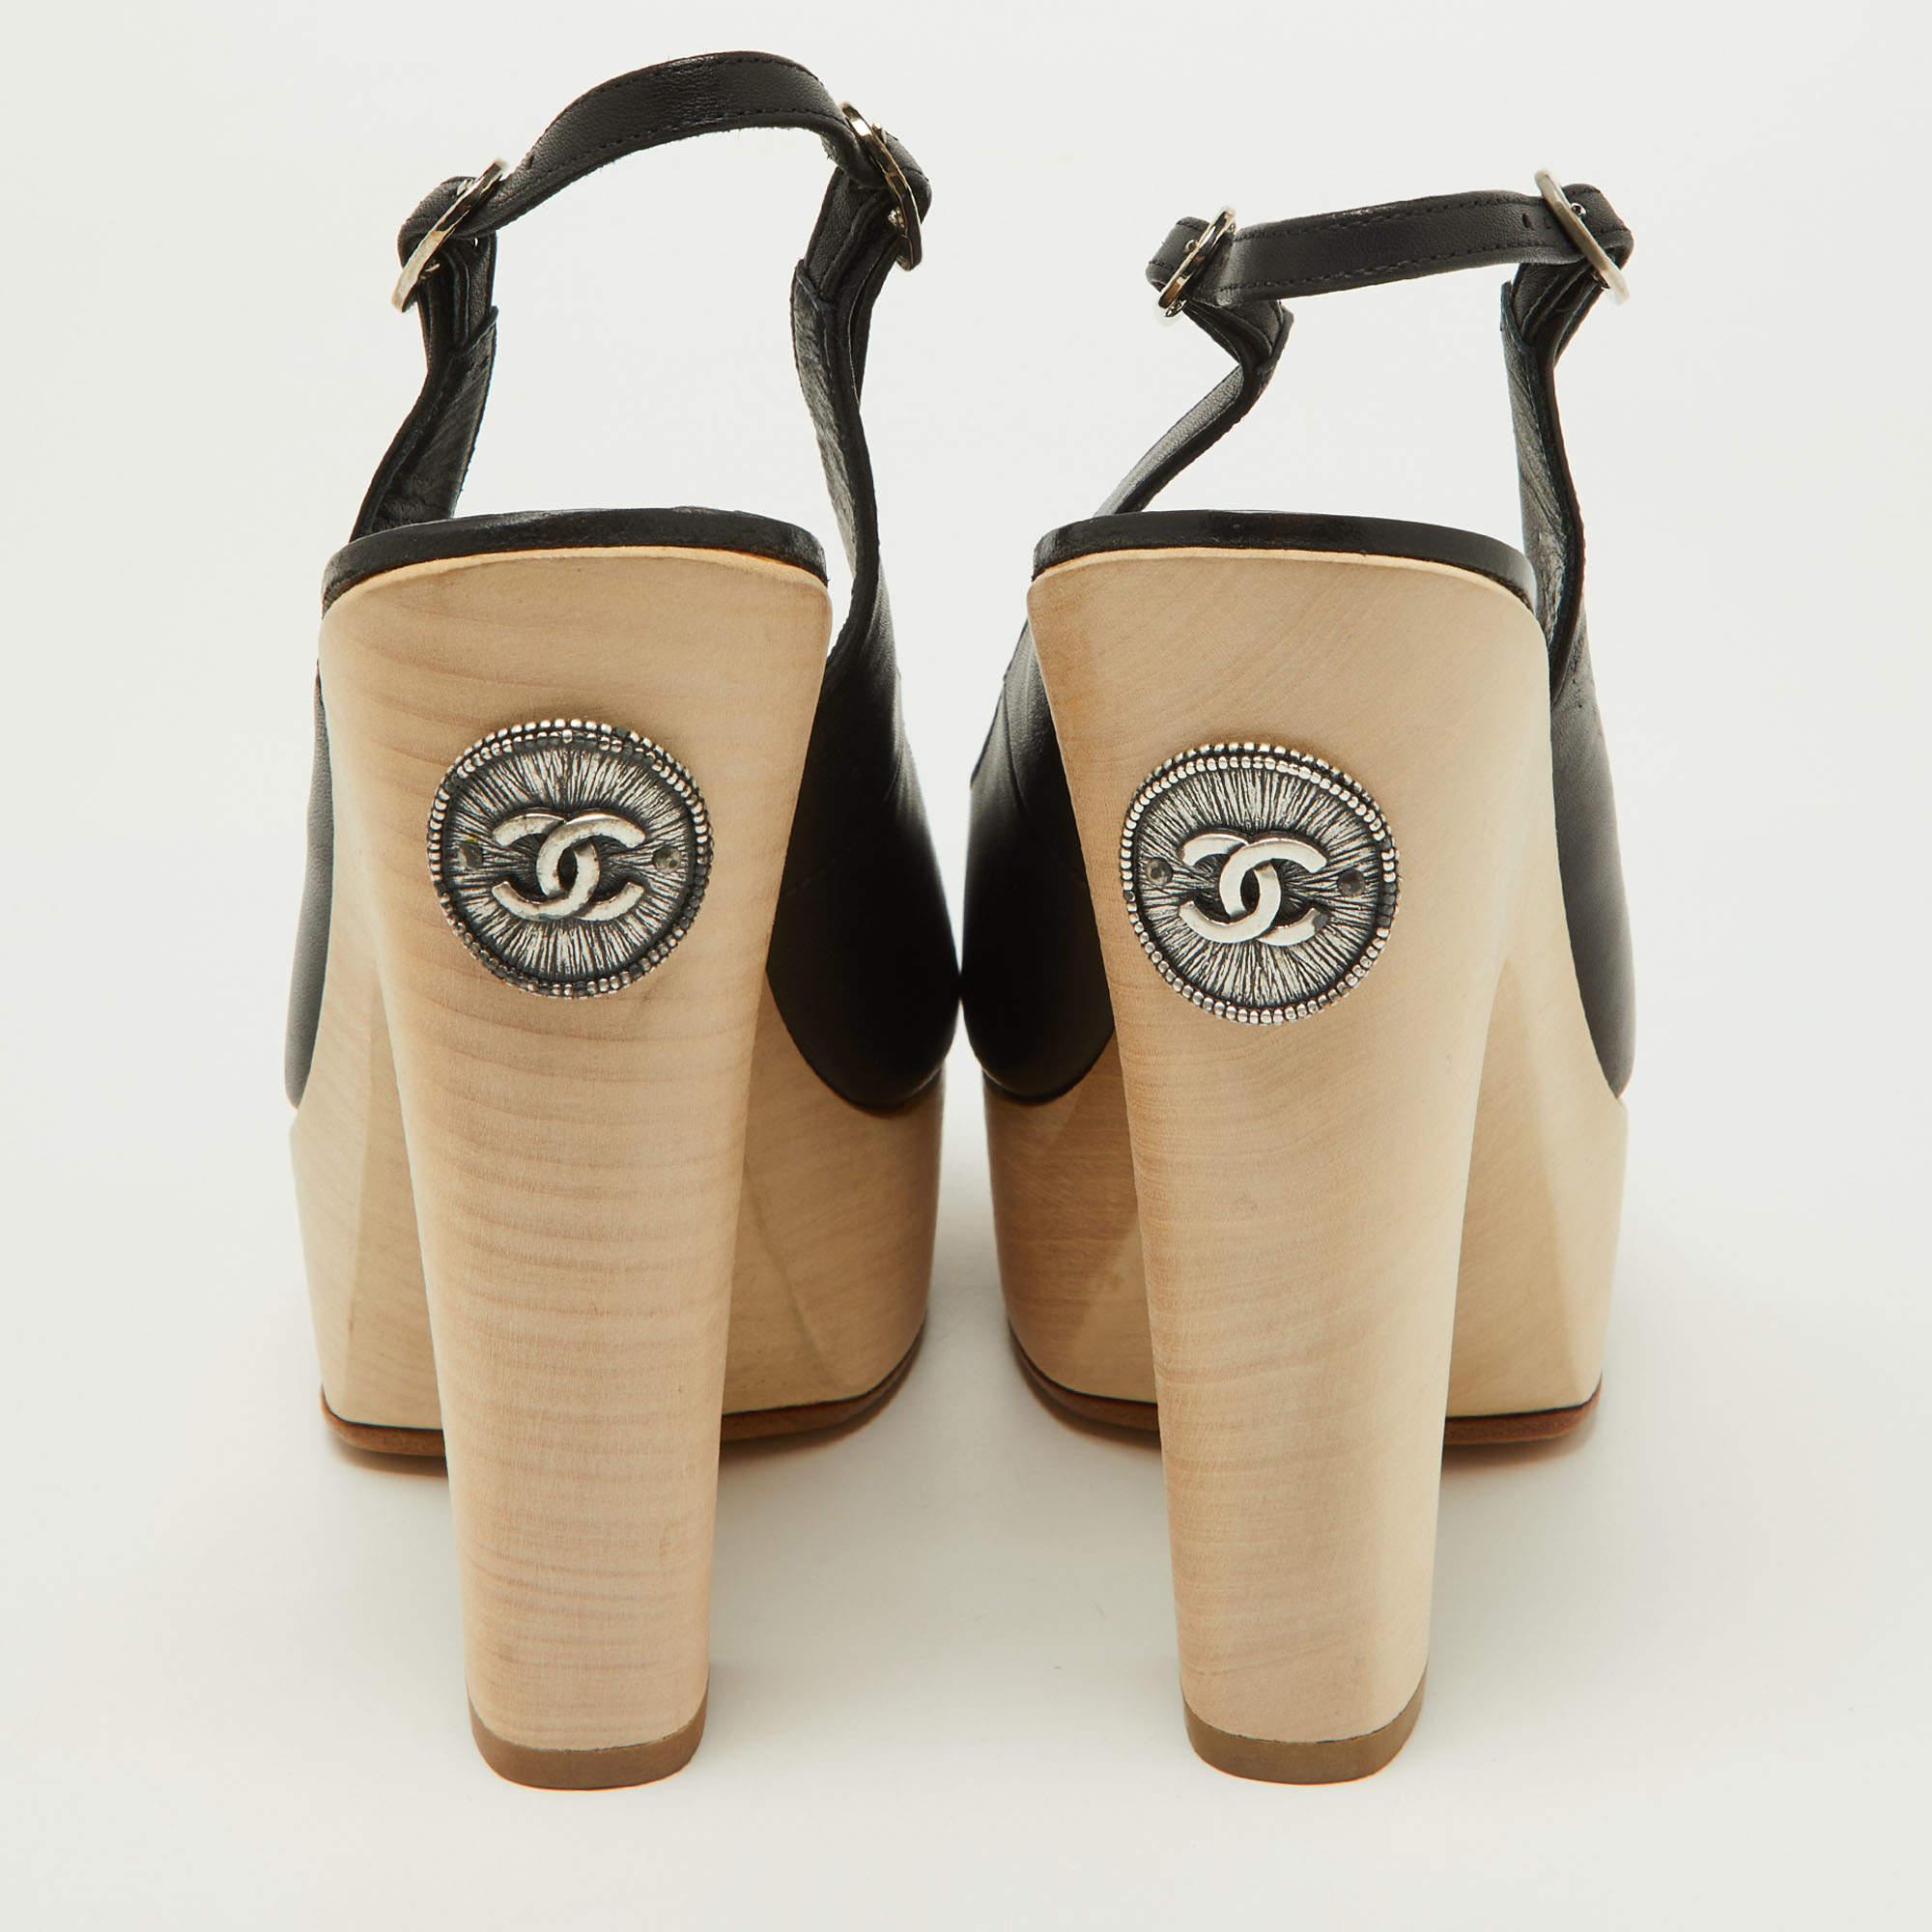 Chanel Black Leather Wooden Block Heel Slingback Platform Pumps Size 39 2